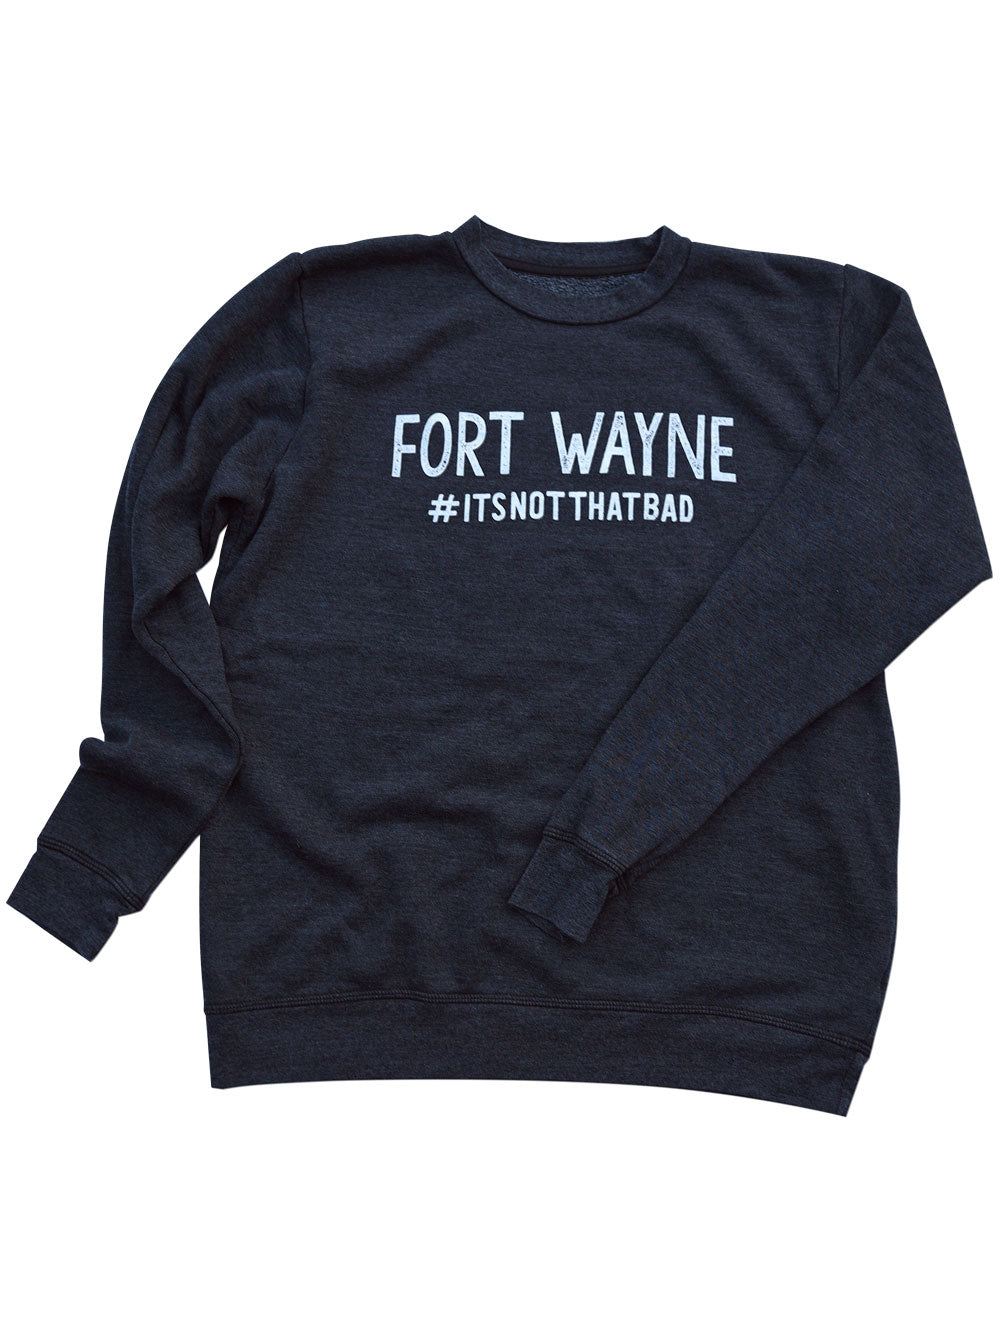 Fort Wayne #itsnotthatbad black heather sweatshirt